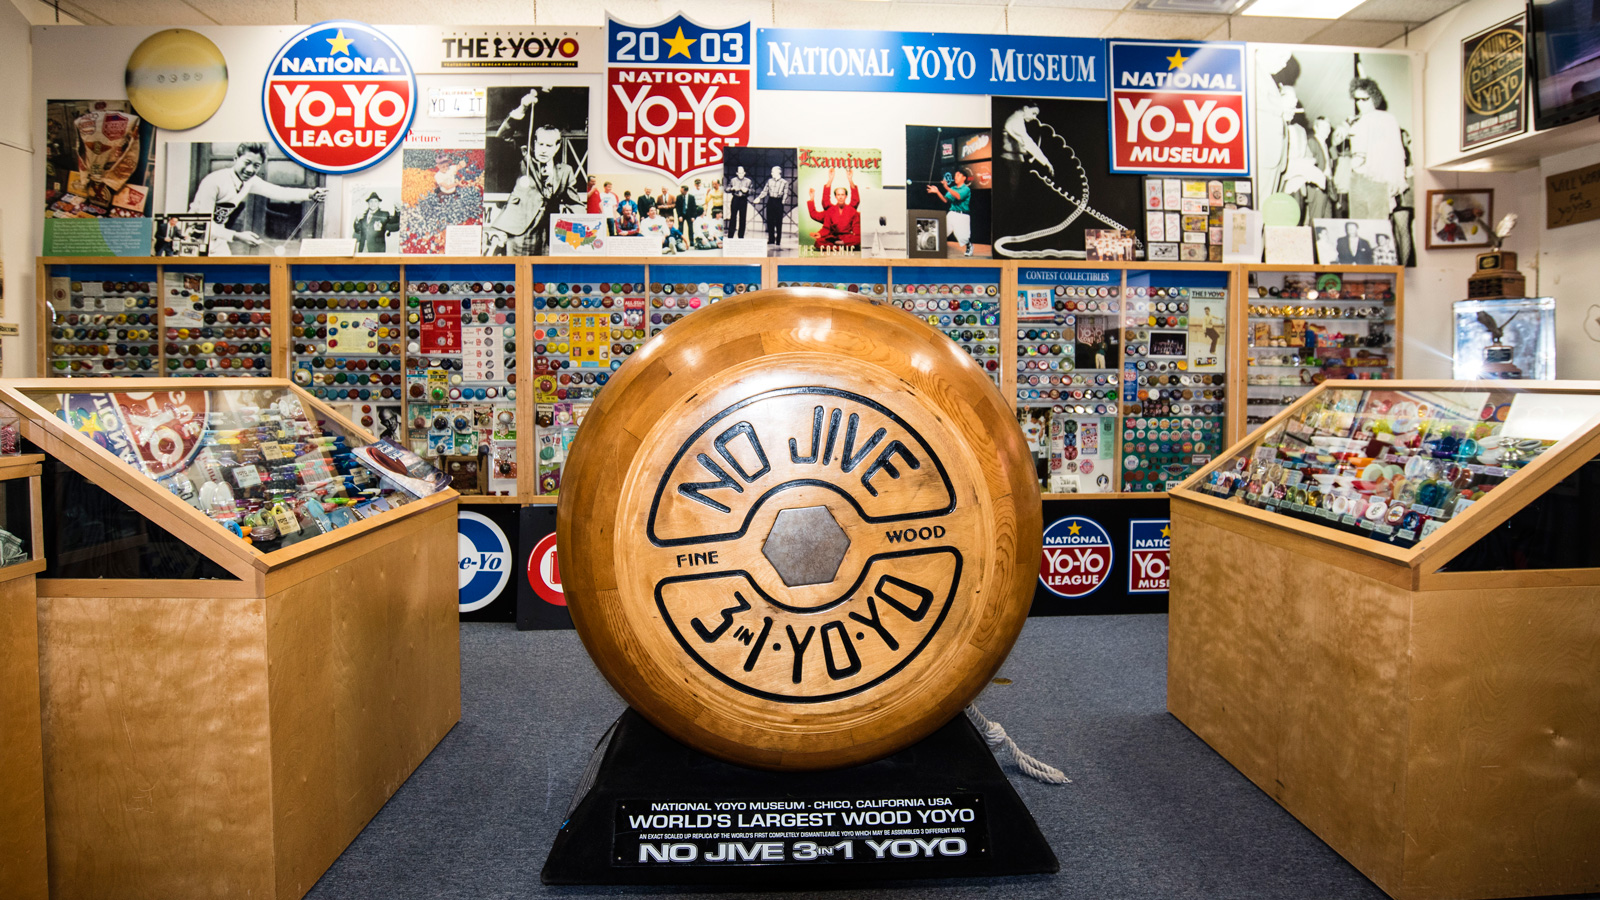 2016-sac-valley-yo-yo-museum